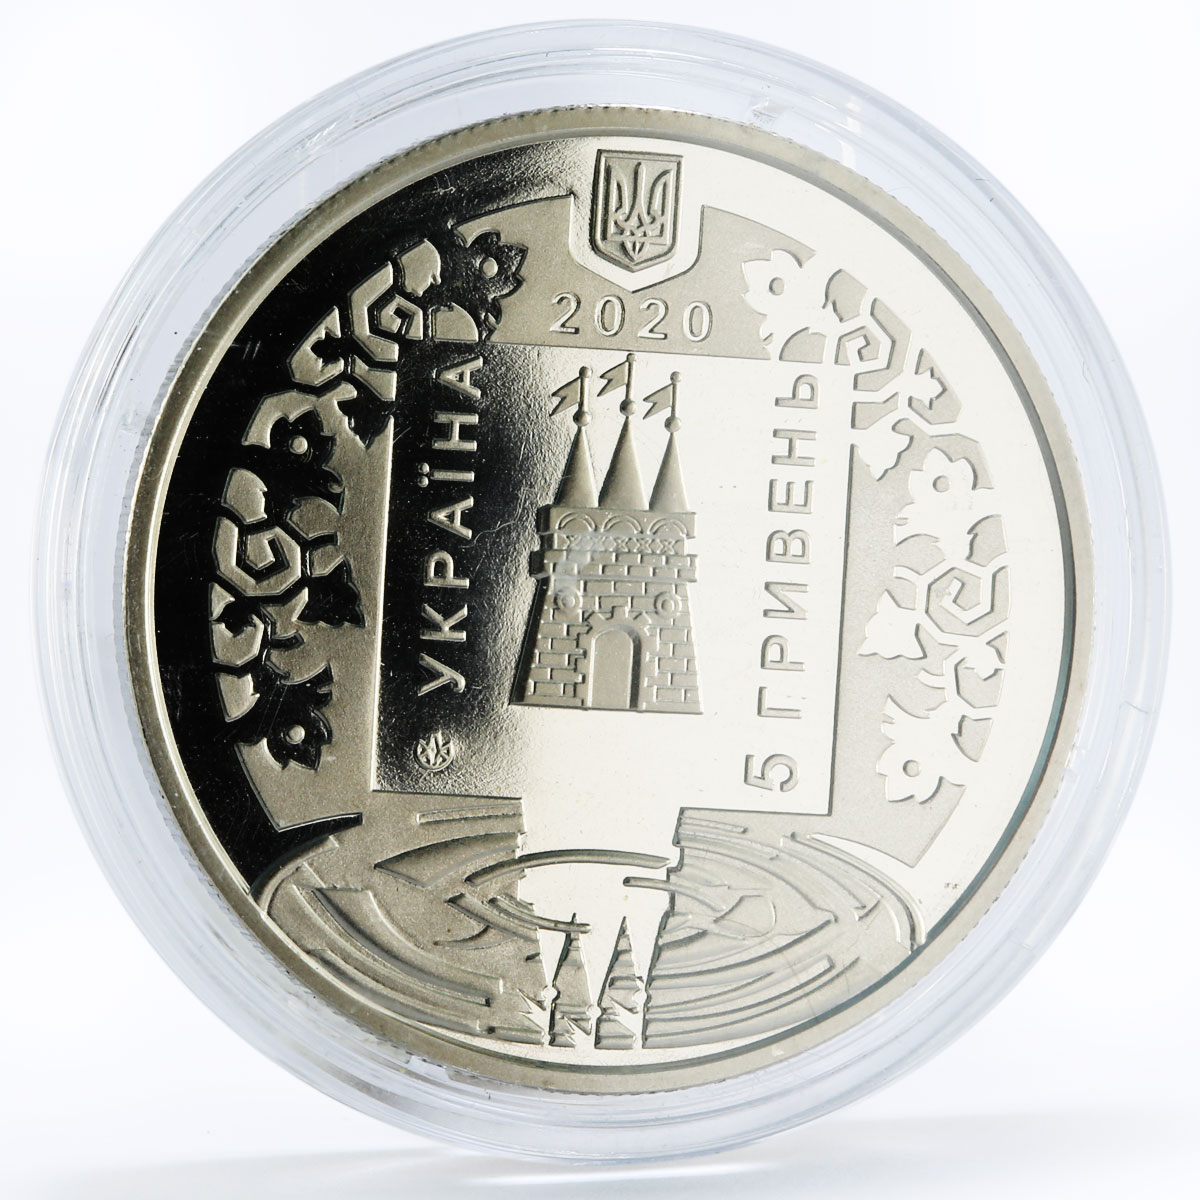 Ukraine 5 hryvnias The 1st Memorie of Lokhnytsia City nickel coin 2020